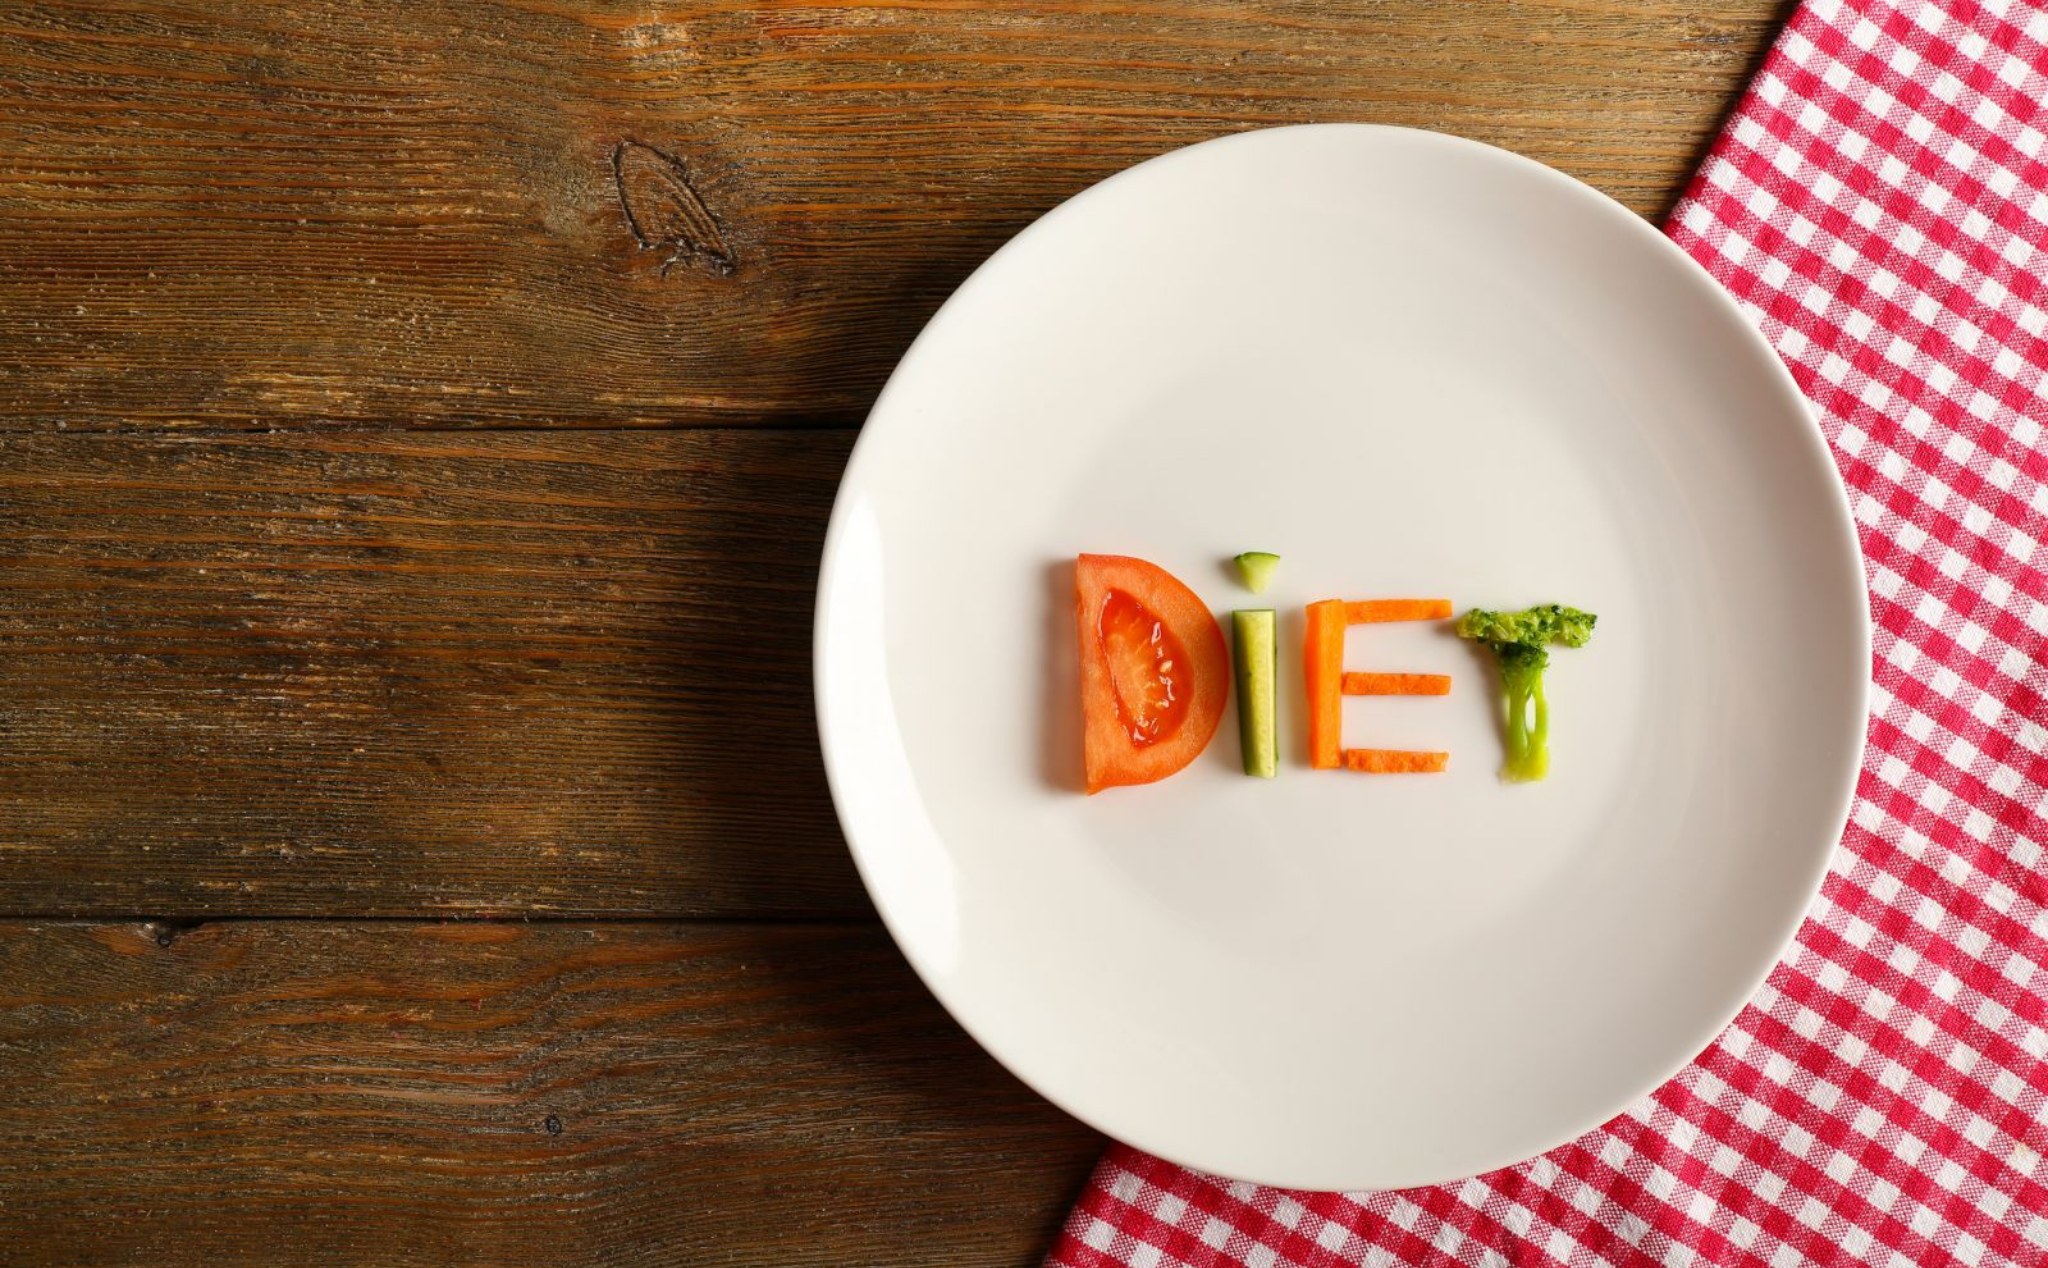 Nghiên cứu kéo dài 1 năm trên người béo phì chỉ ra ăn kiêng theo khung giờ chả có tác dụng